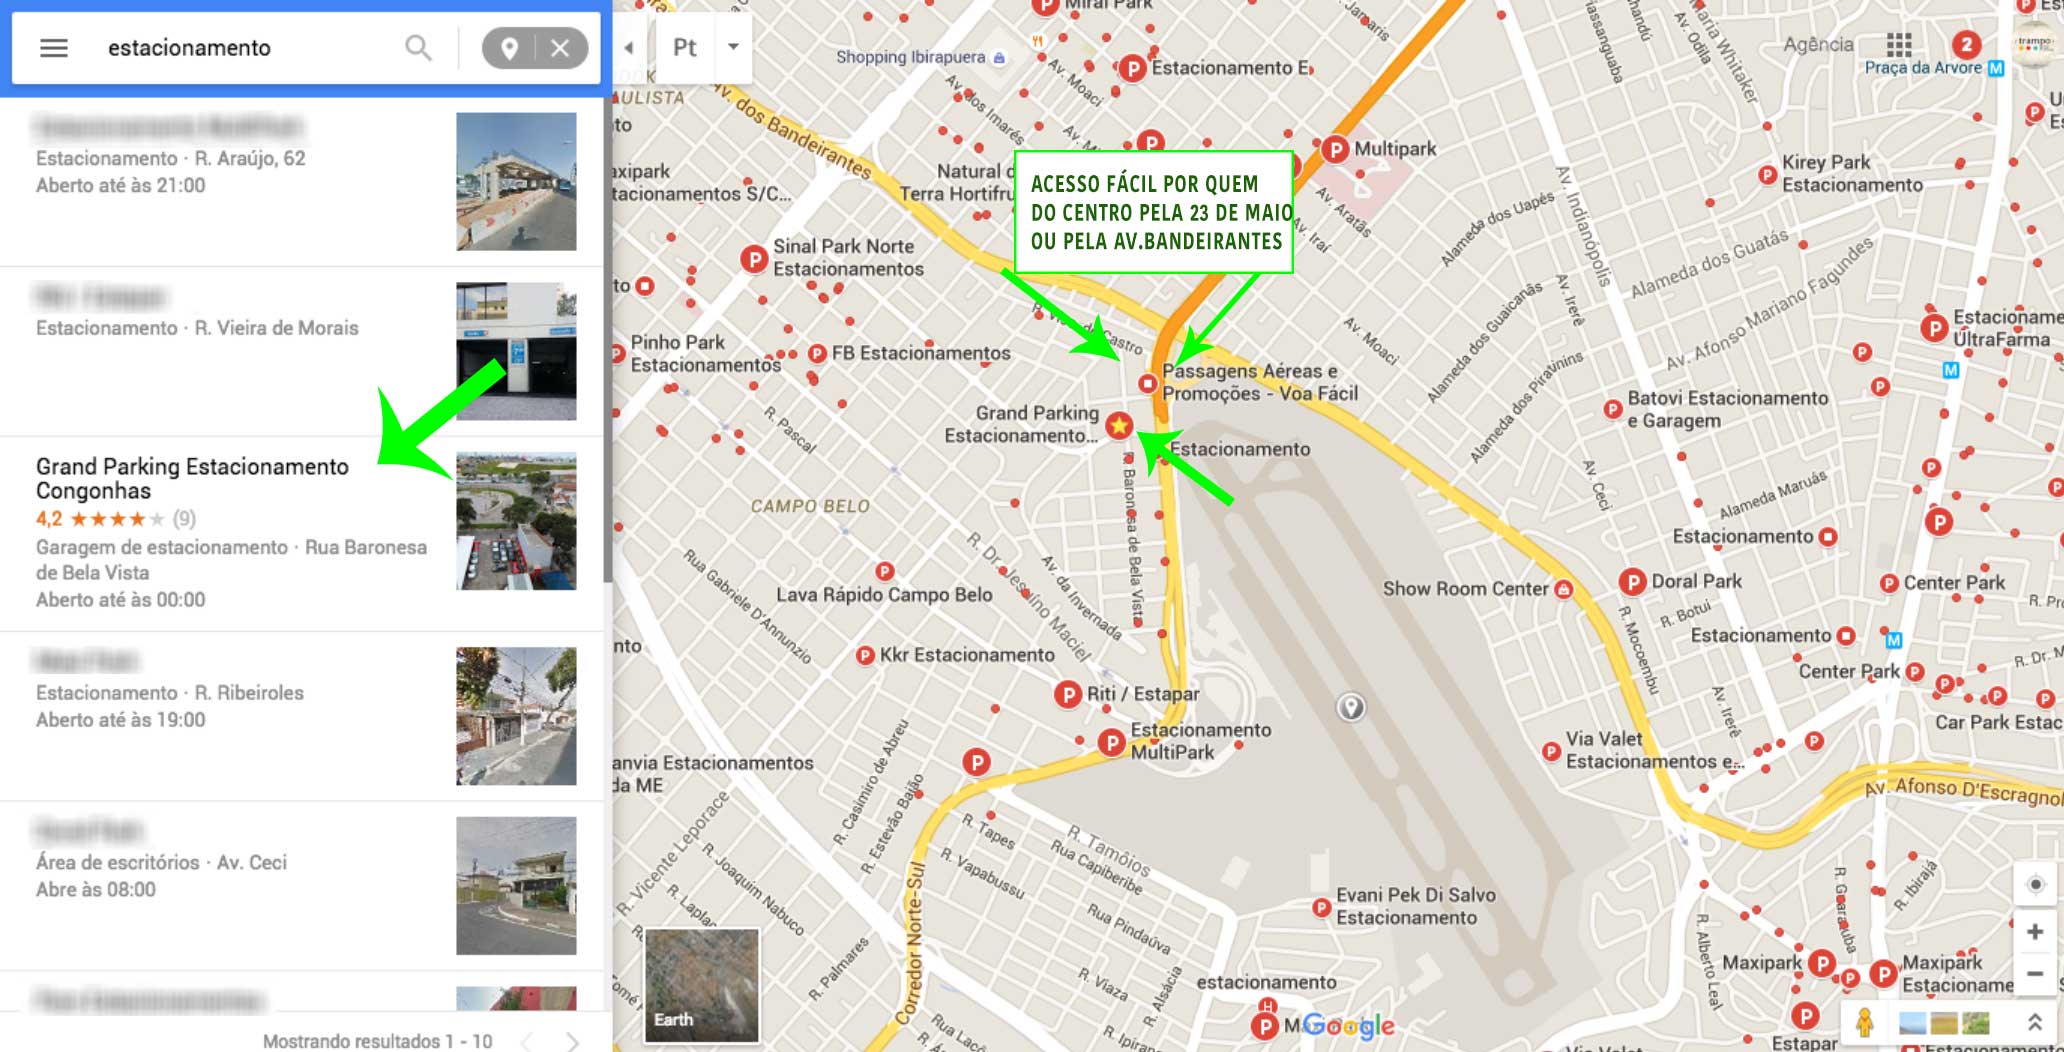 Mapa para estacionar em Congonhas usando o Google Mpas